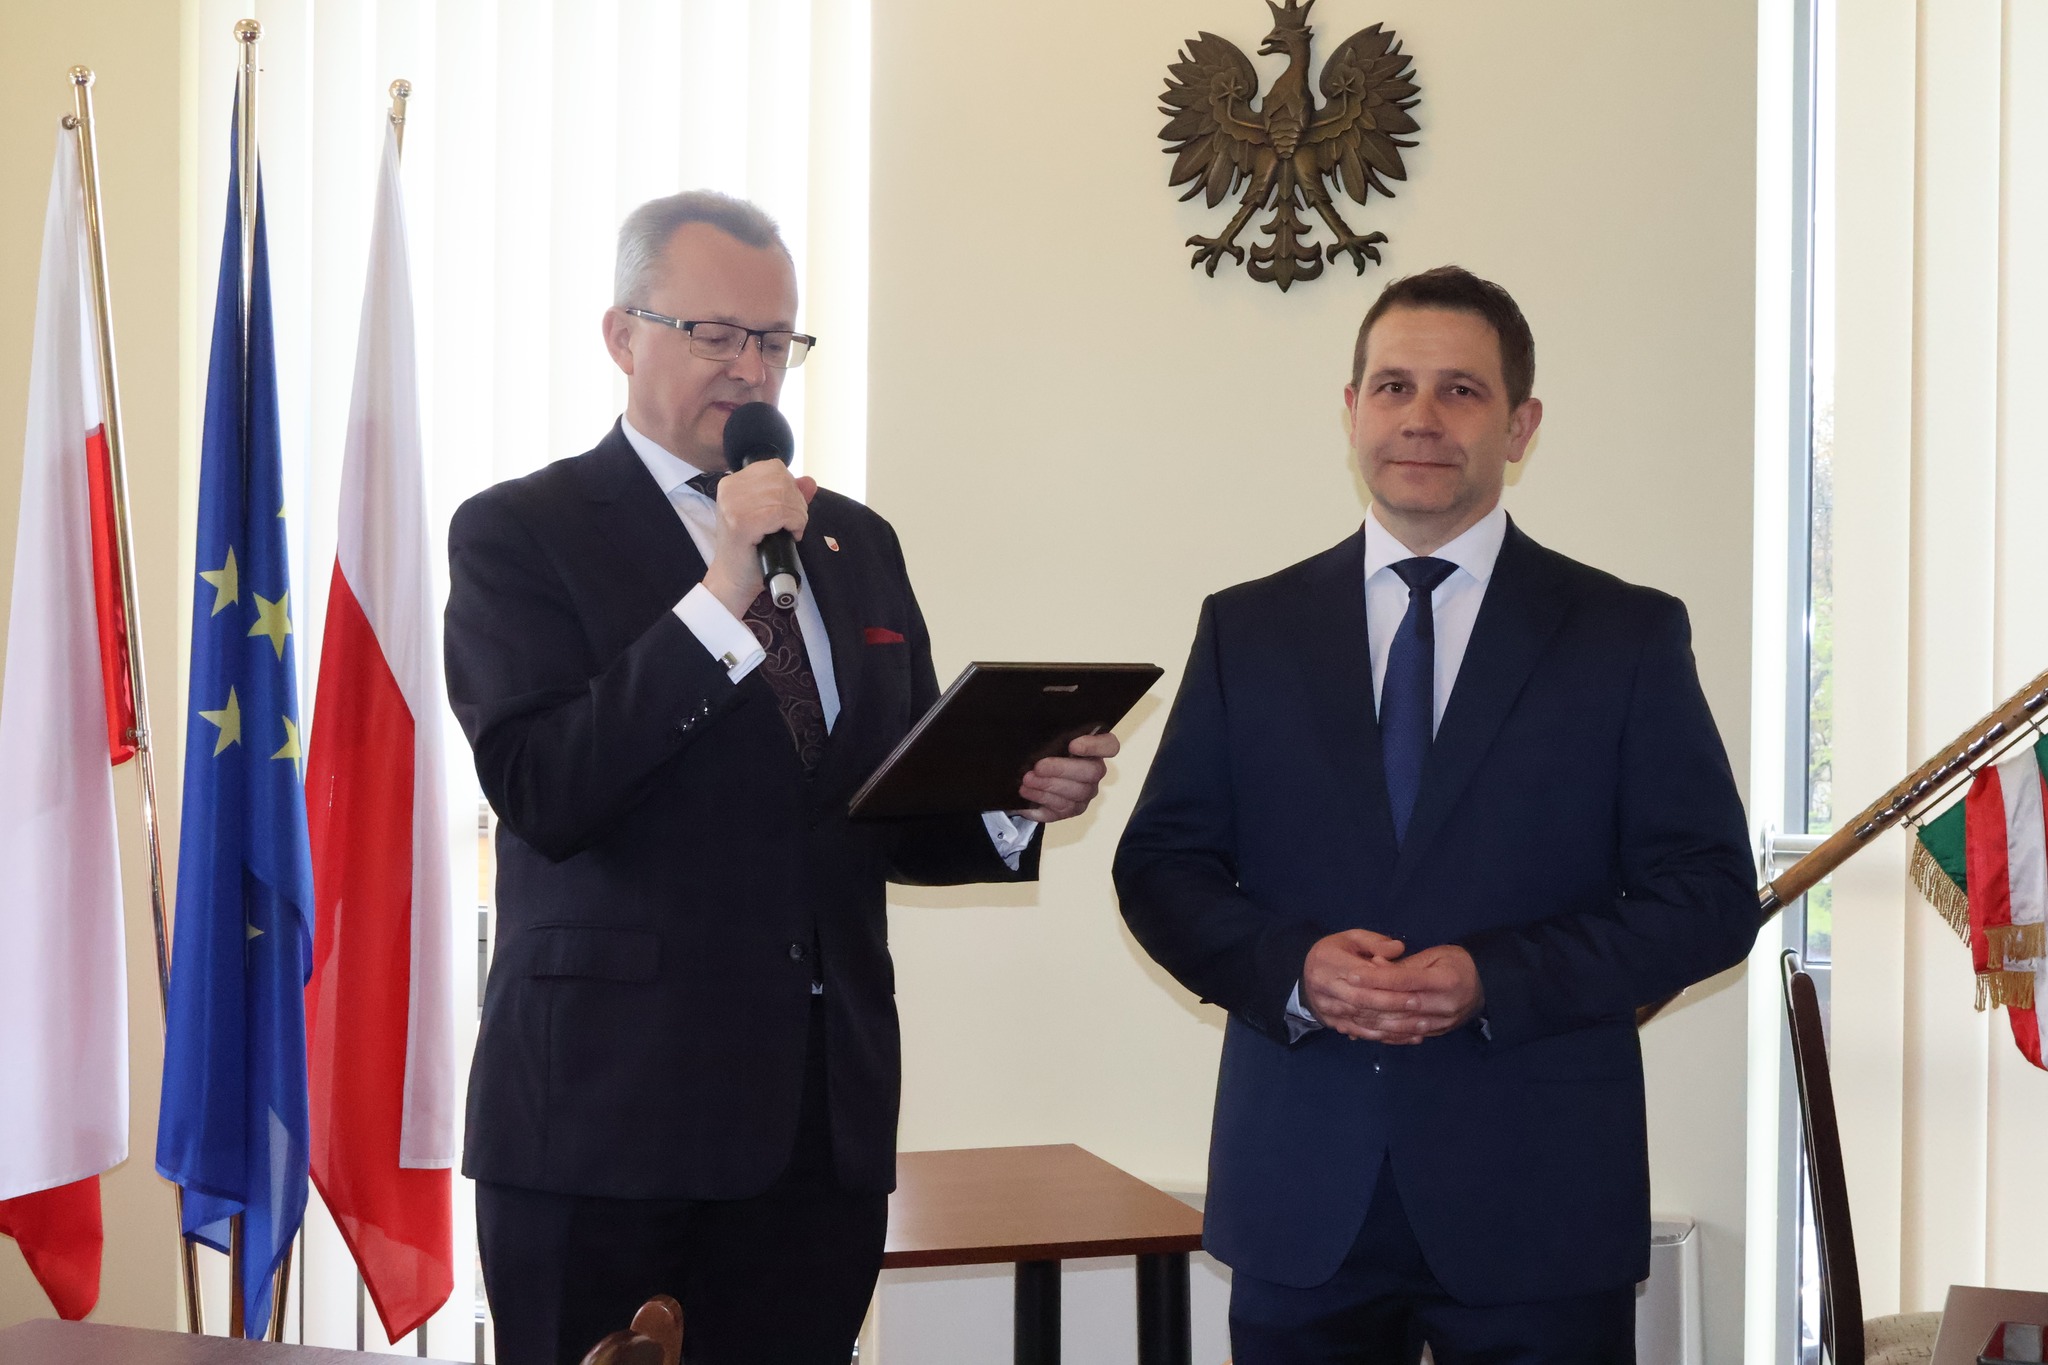 Burmistrz Arkadiusz Sulima i z-ca burmistrza Grzegorz Molendowski